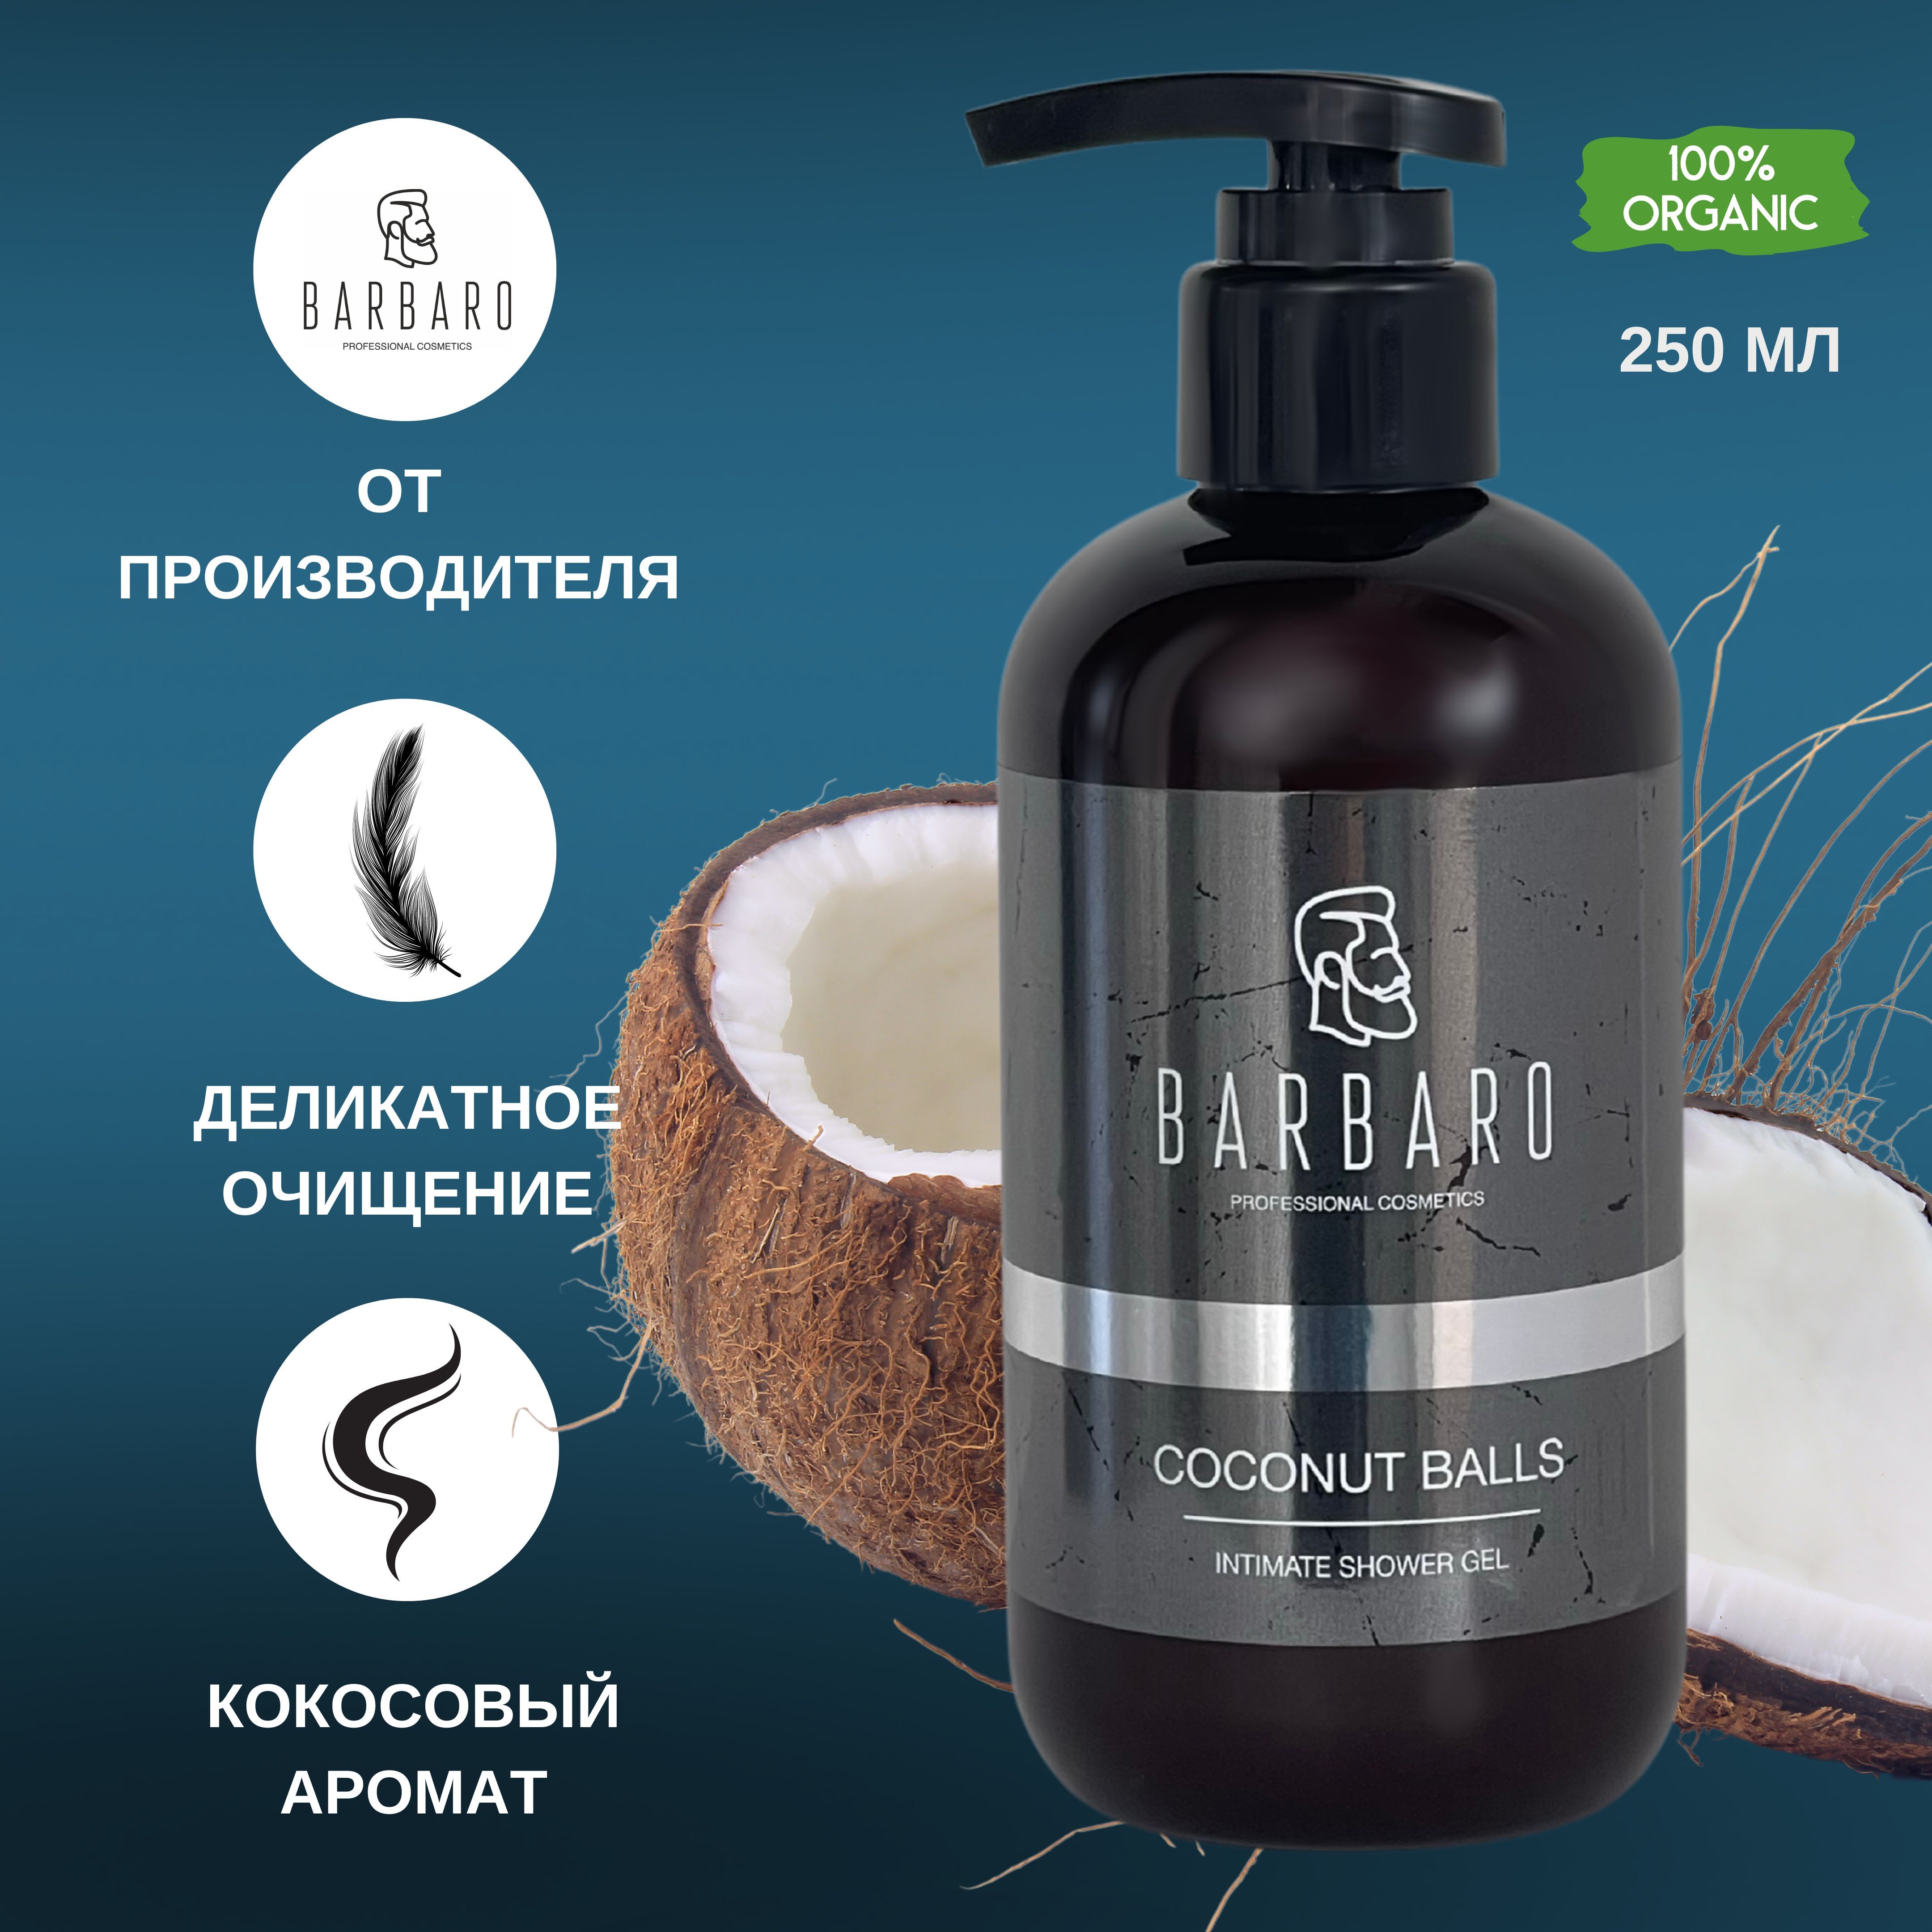 Интимный гель Barbaro мыло Coconut Balls ph 7, 250 мл интимный ликбез с родителями и без